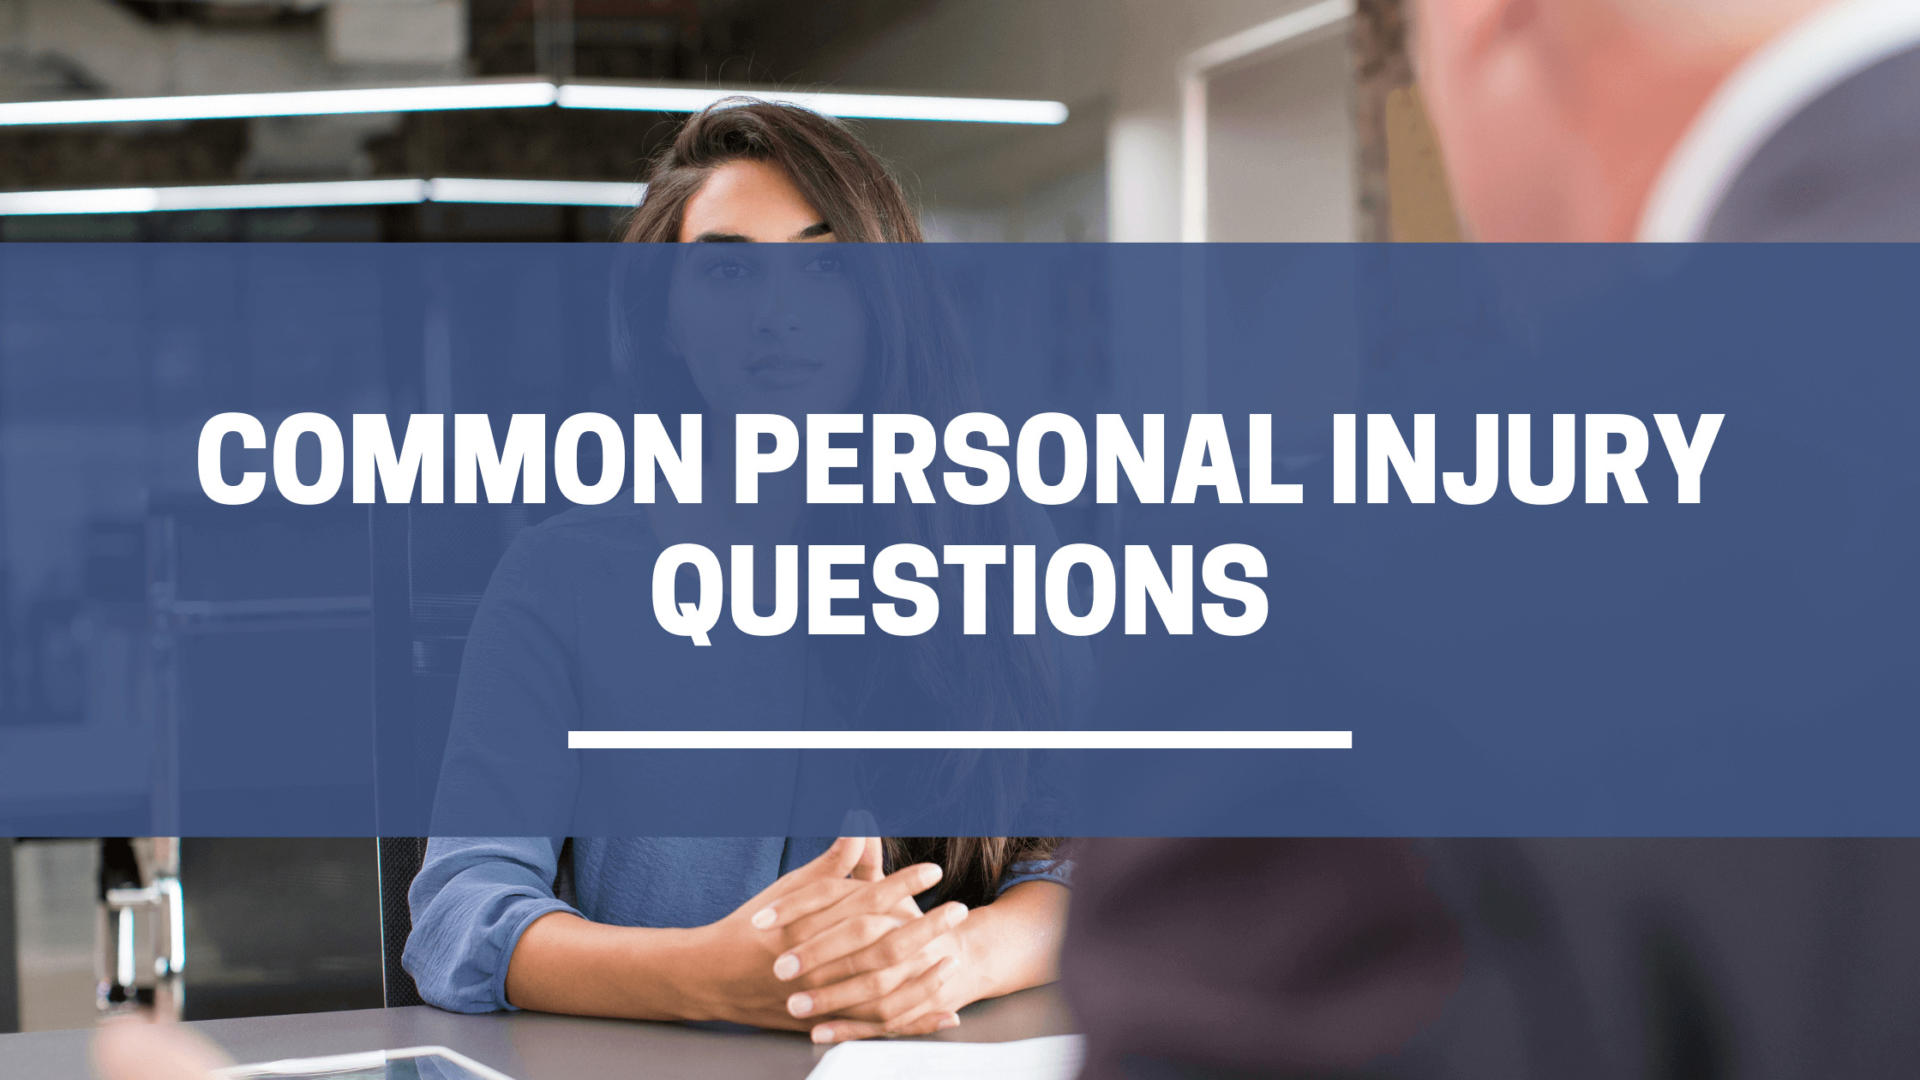 Preguntas comunes sobre lesiones personales